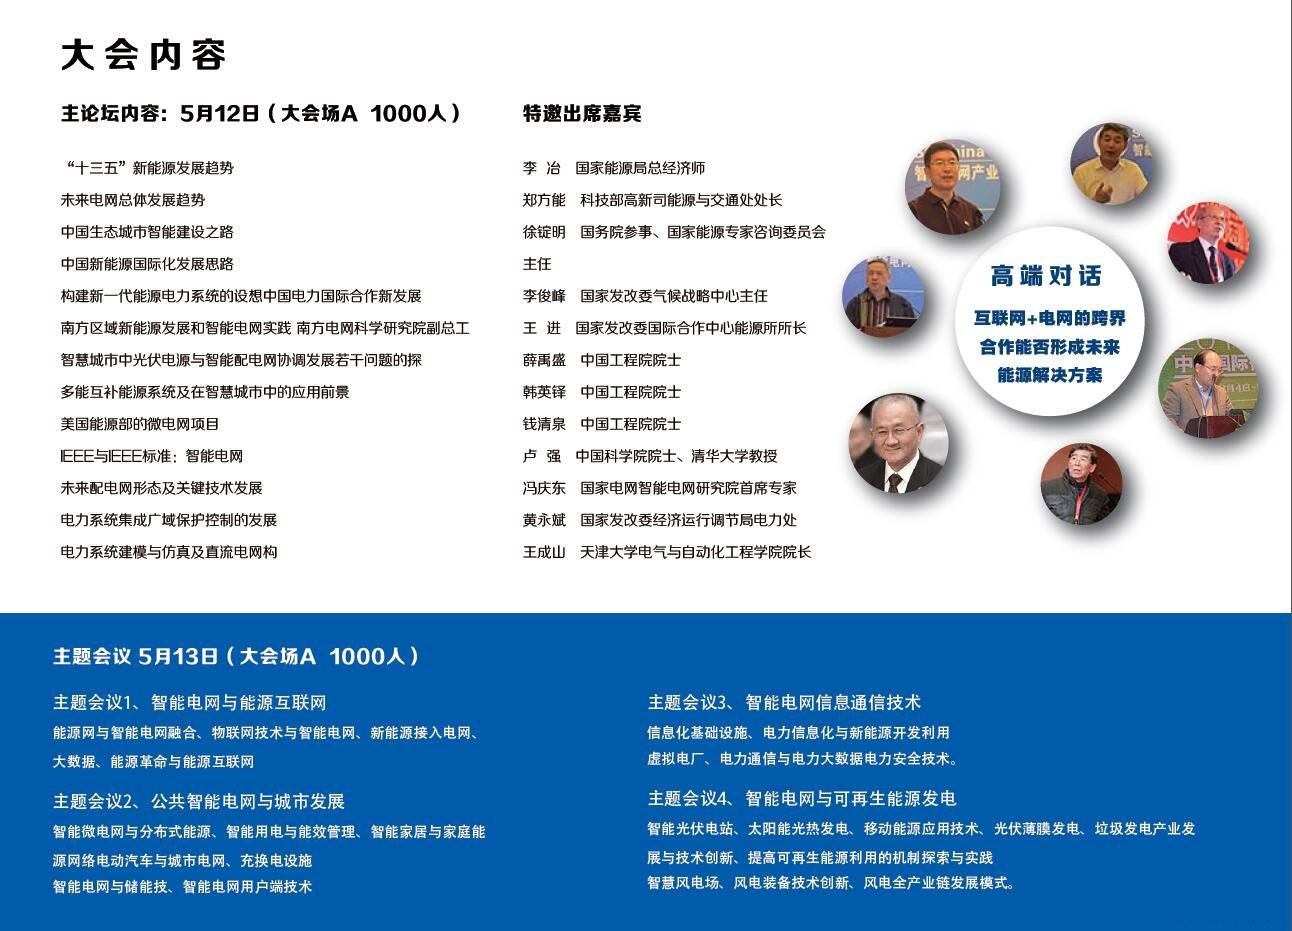 第四届中国国际智能电网产业关键技术千人峰会